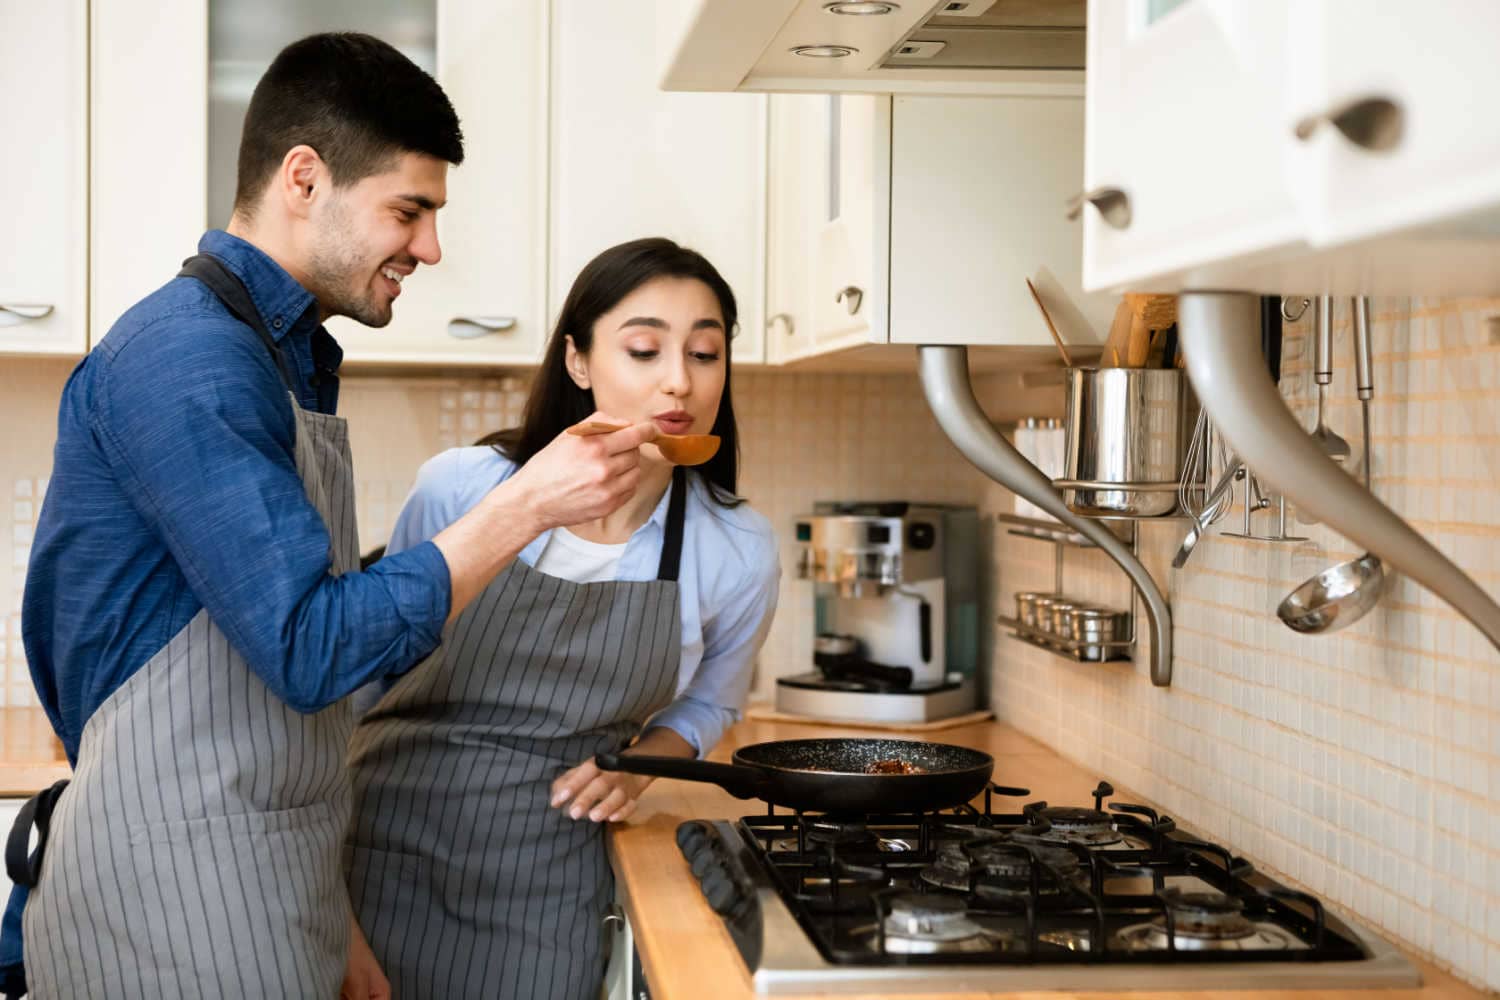 Help your partner prepare healthy meals